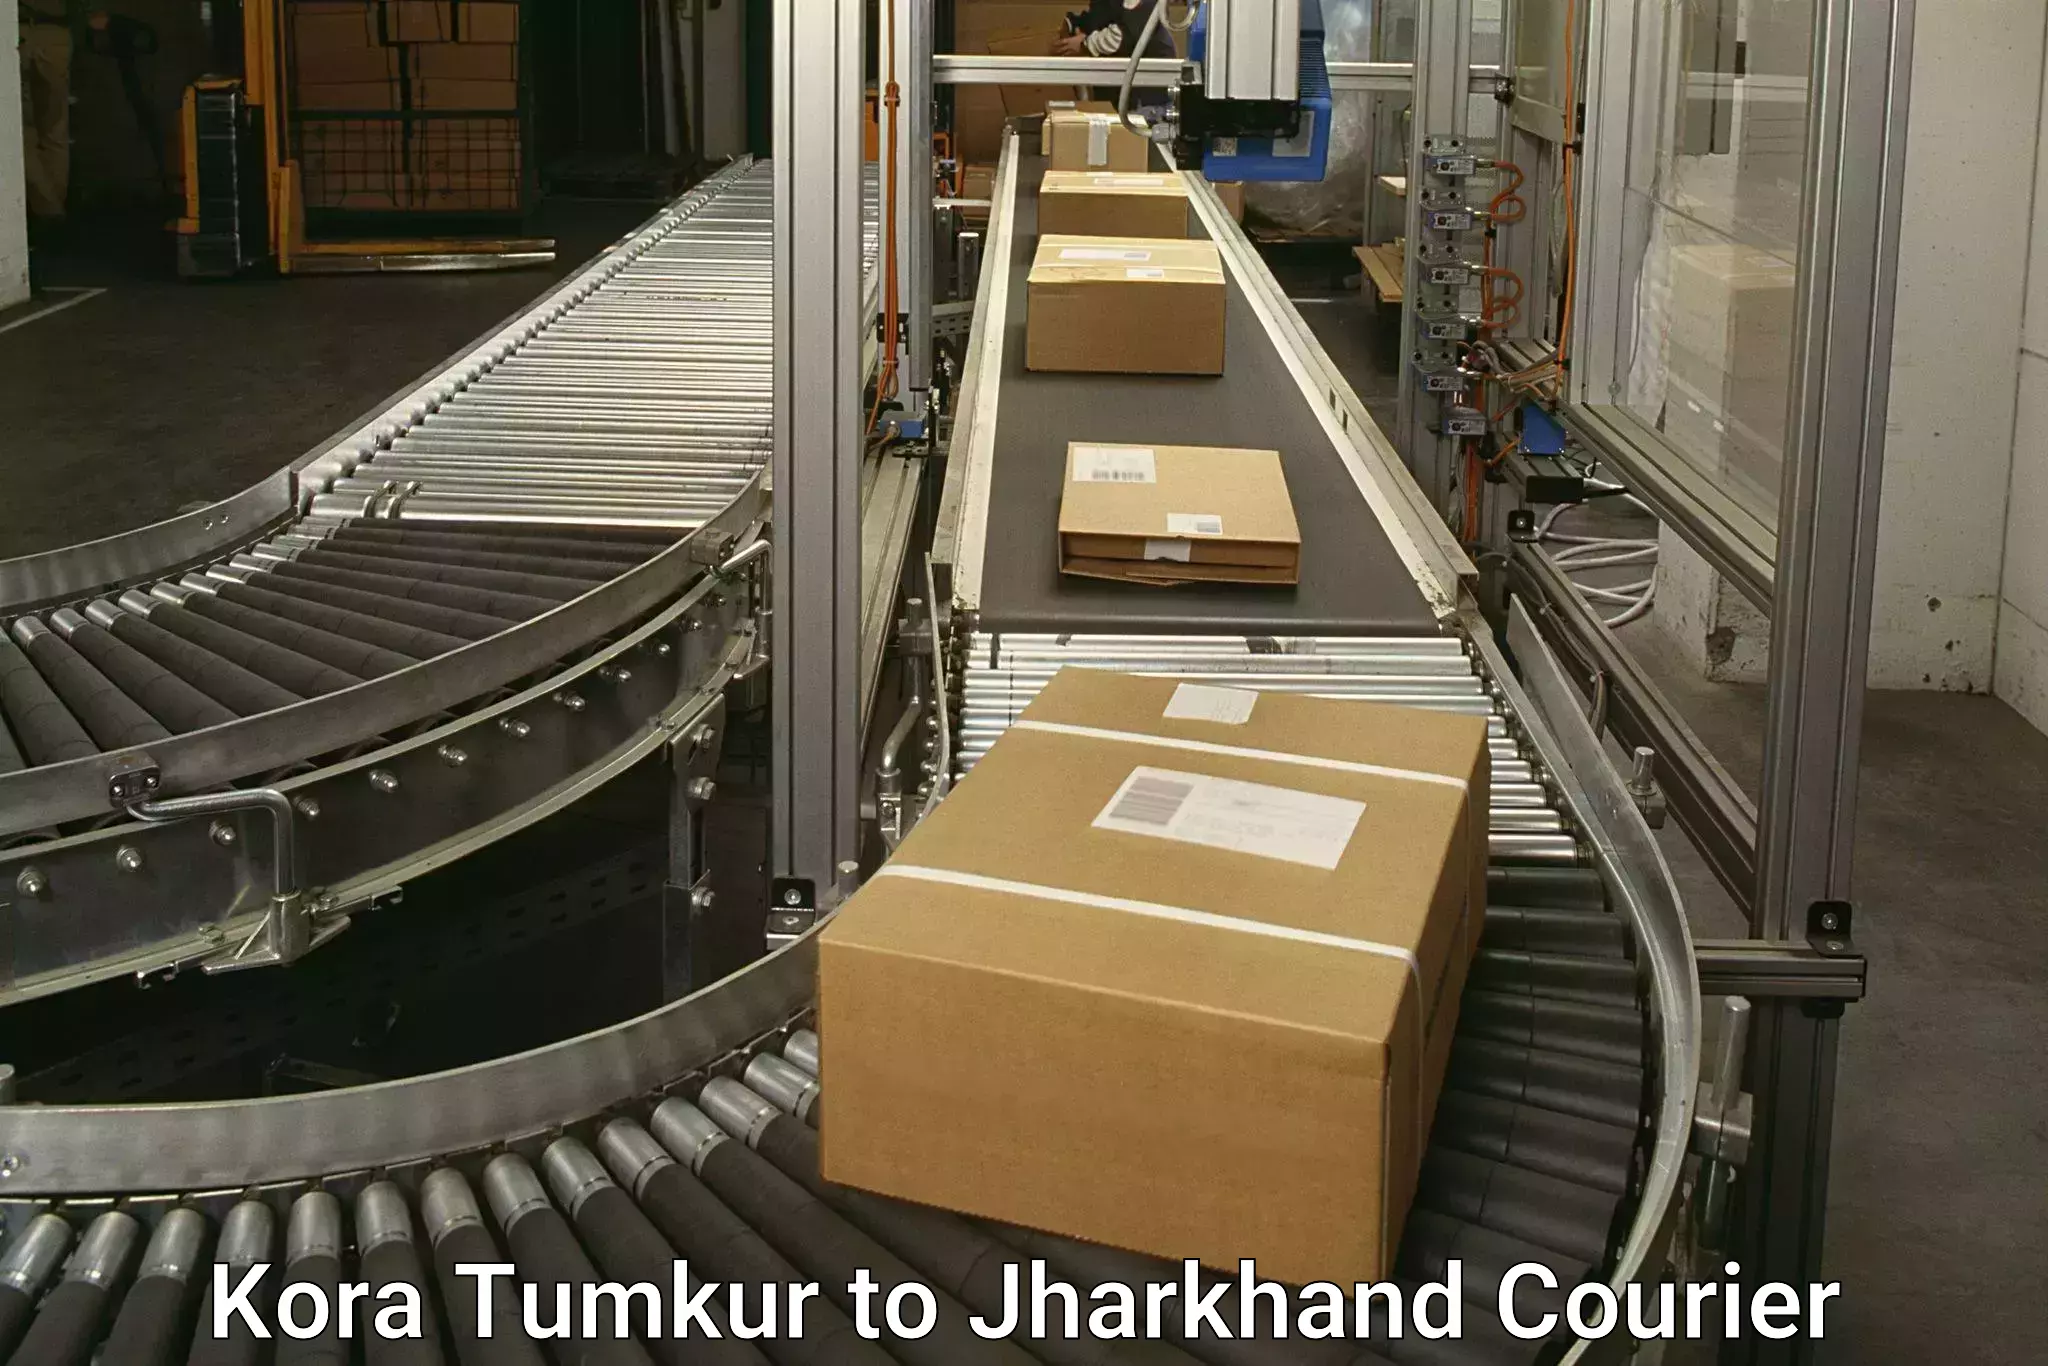 High-speed parcel service Kora Tumkur to Nirsa